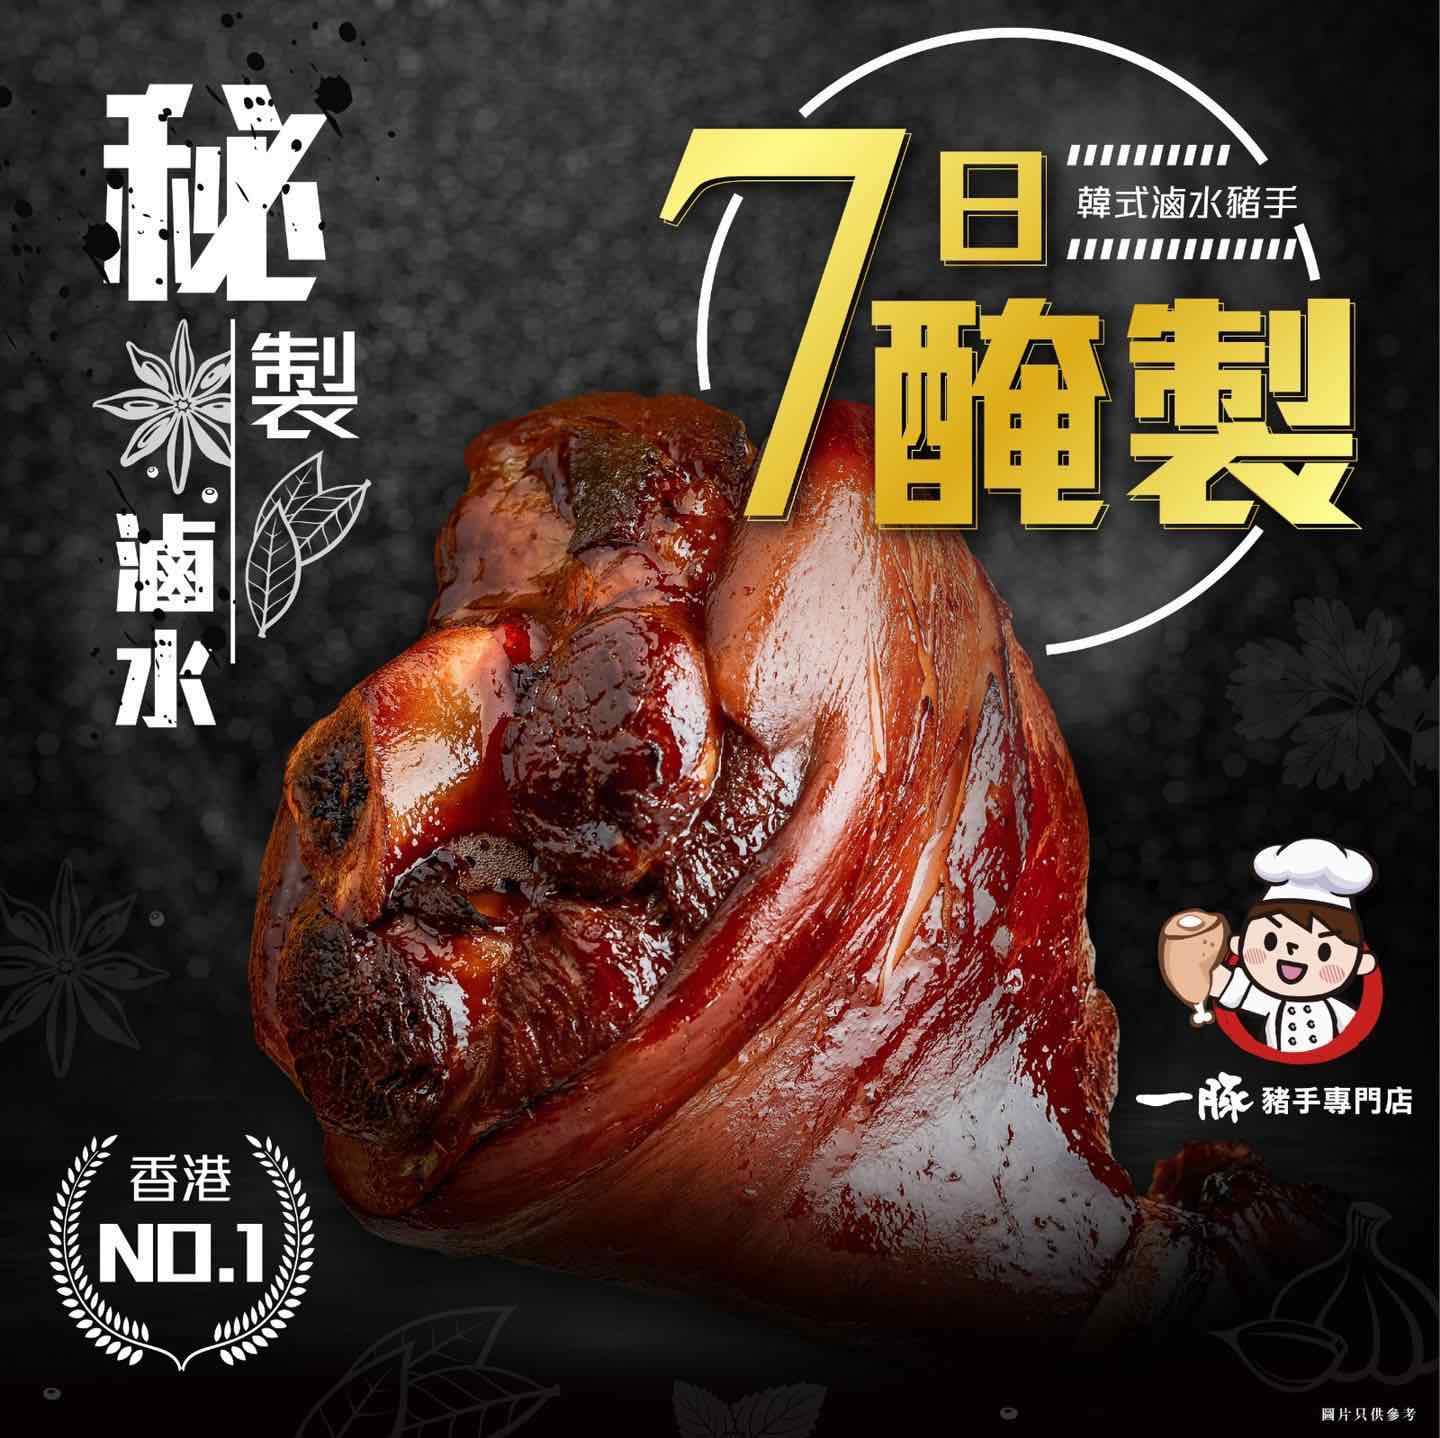 一豚豬手專門店的特許經營香港區加盟店項目5